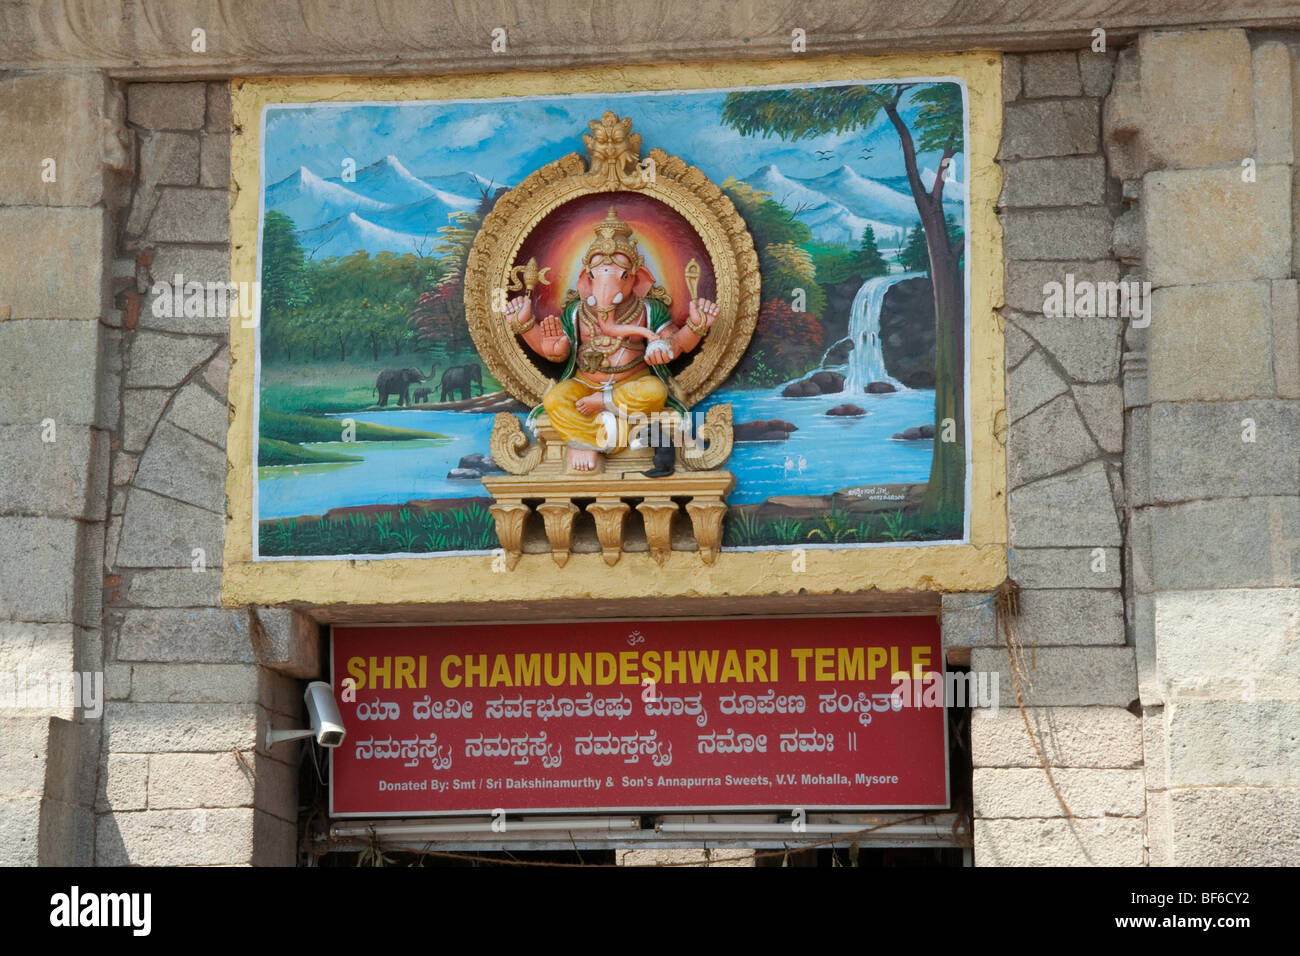 Shri chamundeshwari temple hi-res stock photography and images - Alamy